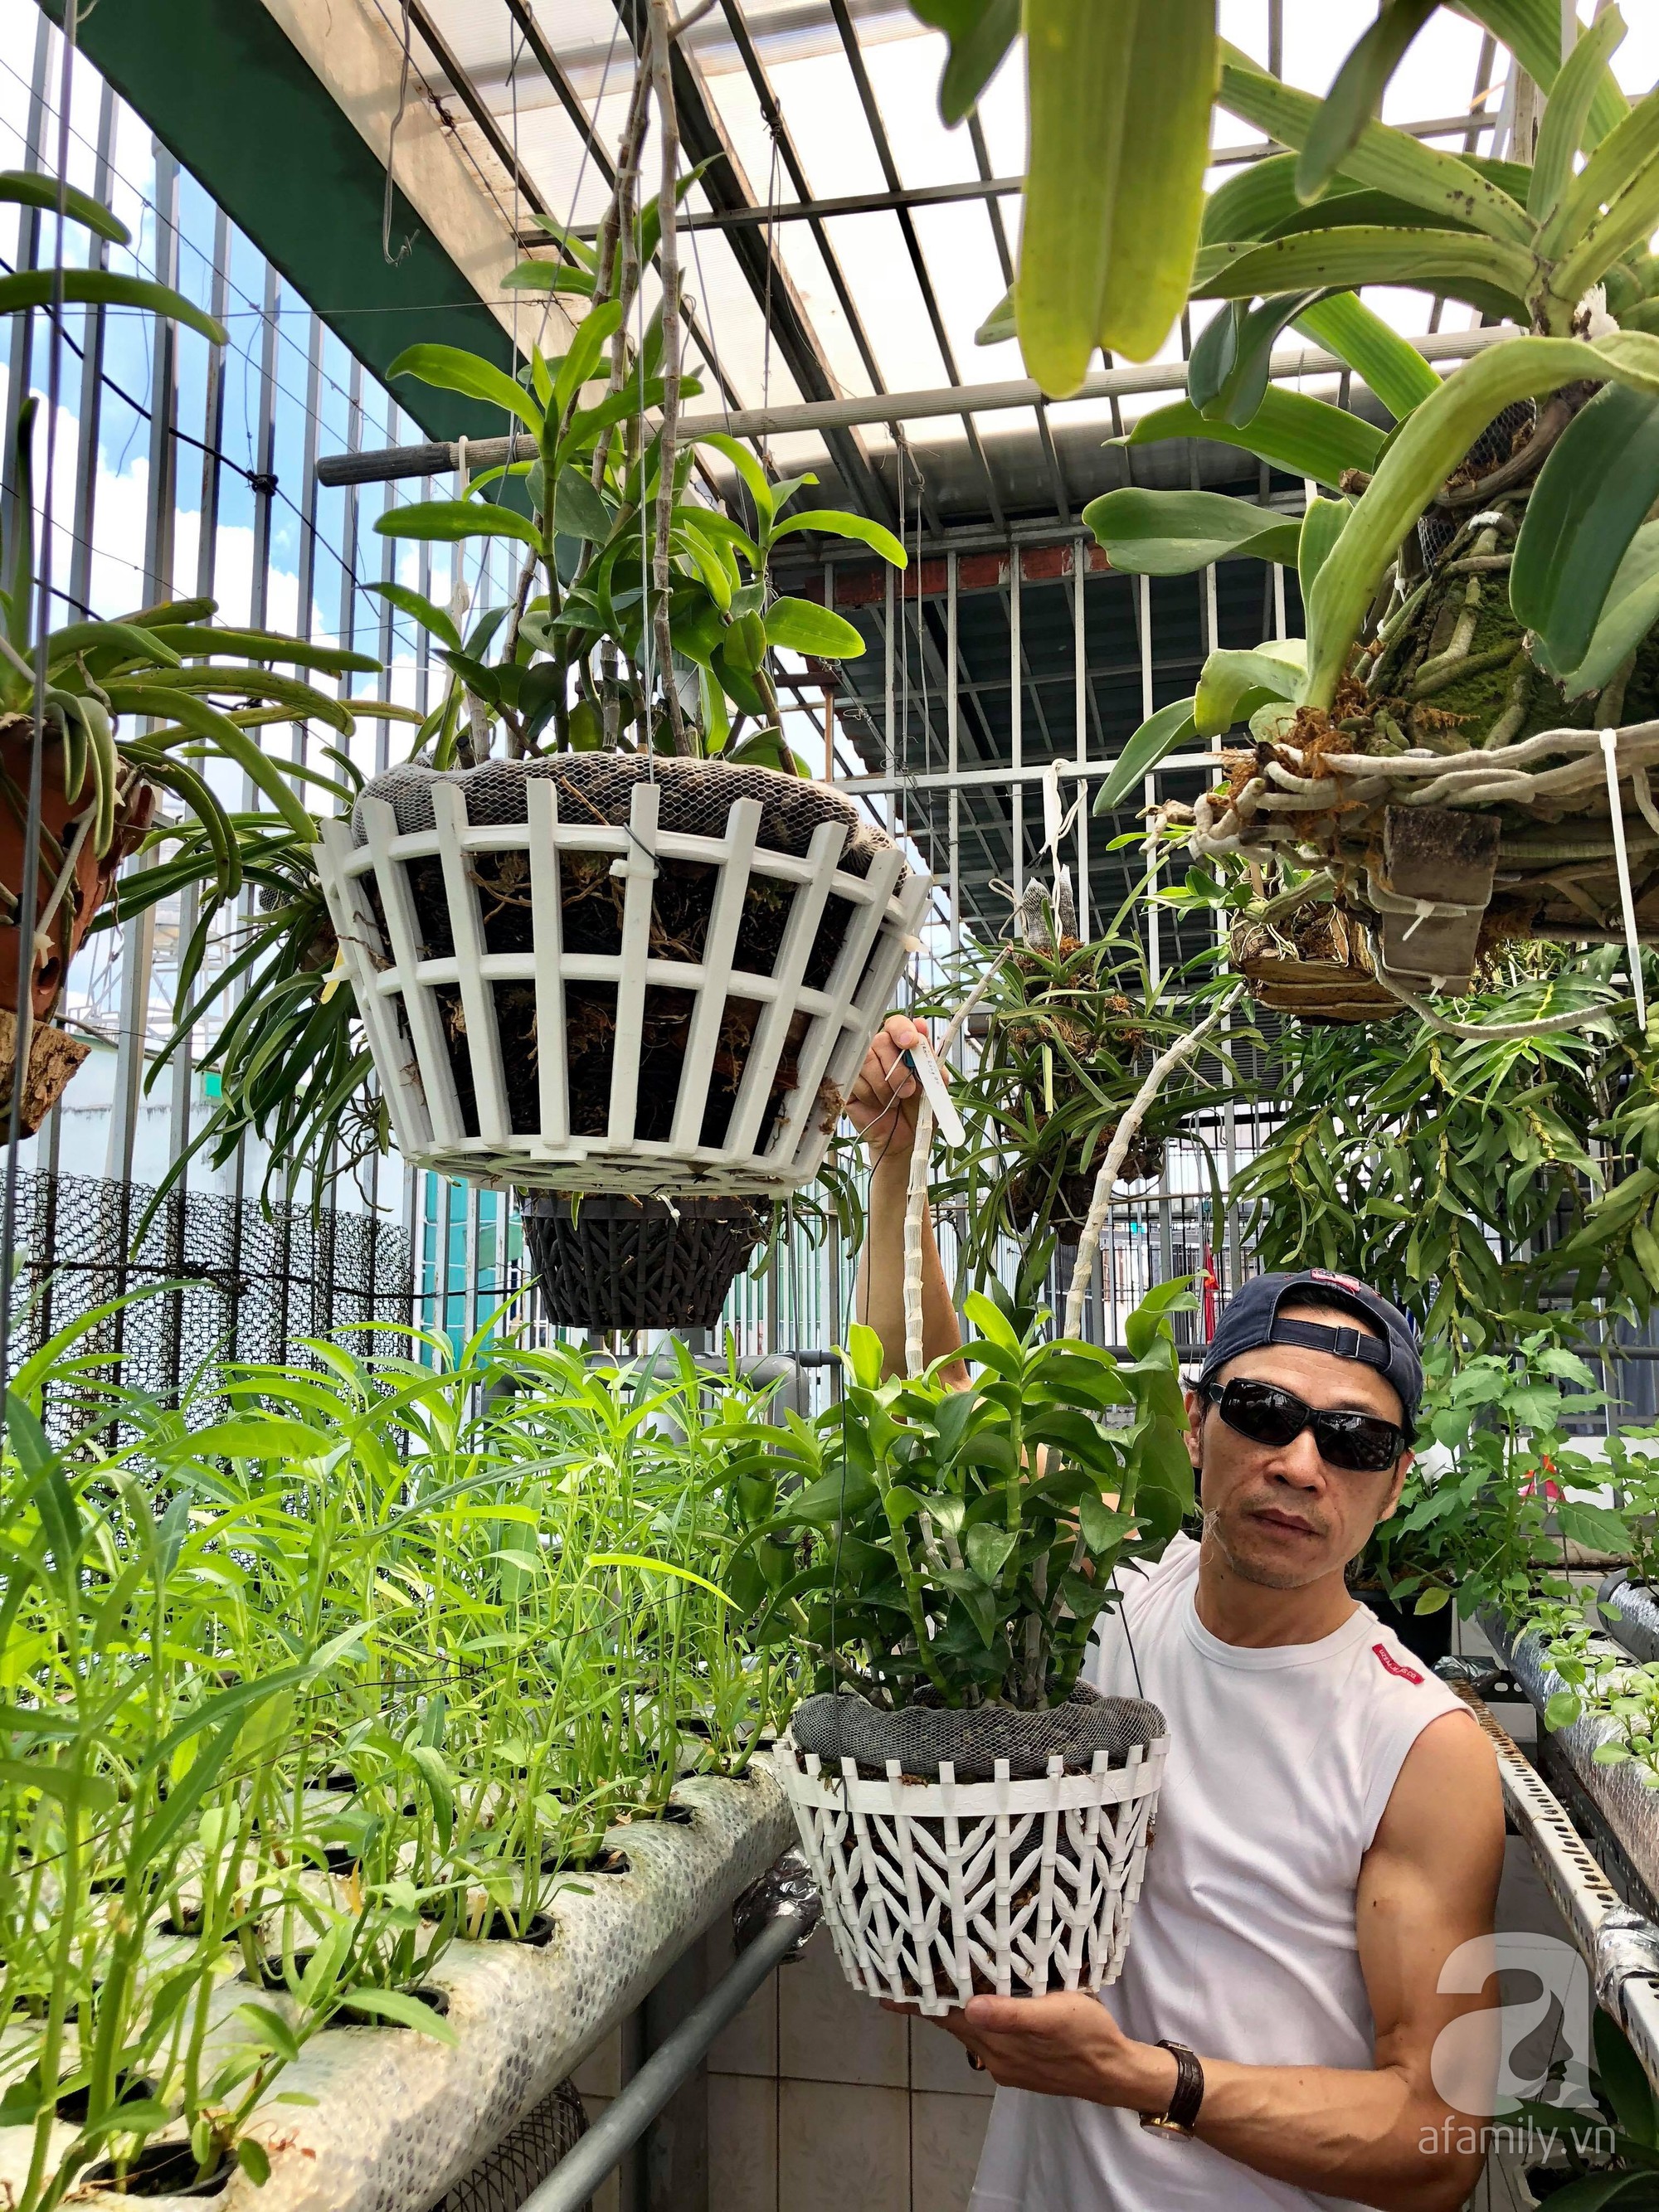 Khu vườn sân thượng xanh mướt: Với những khu vườn sân thượng xanh mướt, bạn có thể tận hưởng không gian sống trong lành và thư giãn, bên cạnh đó còn là cách tuyệt vời để giảm thiểu tác động đến môi trường. Tại Việt Nam, những khu vườn này không chỉ đáp ứng nhu cầu sân vườn nhỏ gọn mà còn mang lại một cảm giác thư thái cho người sử dụng.